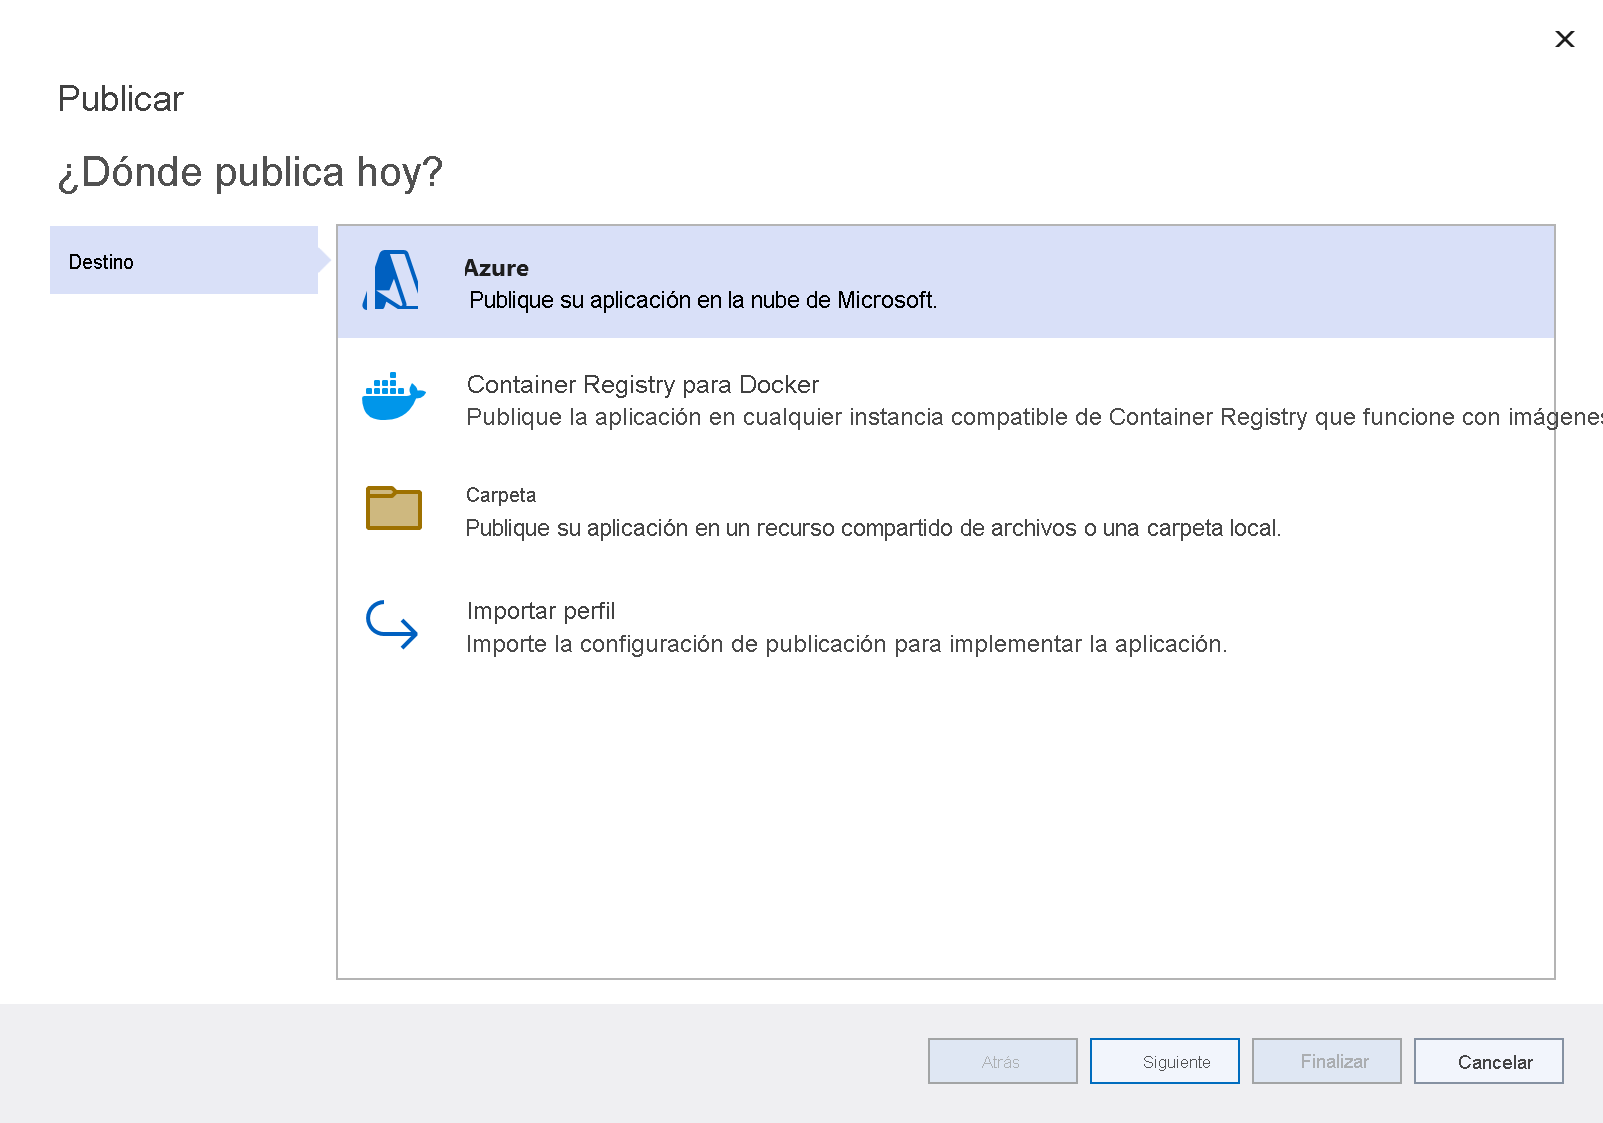 Captura de pantalla de la ventana de destino de publicación con la opción Azure resaltada.